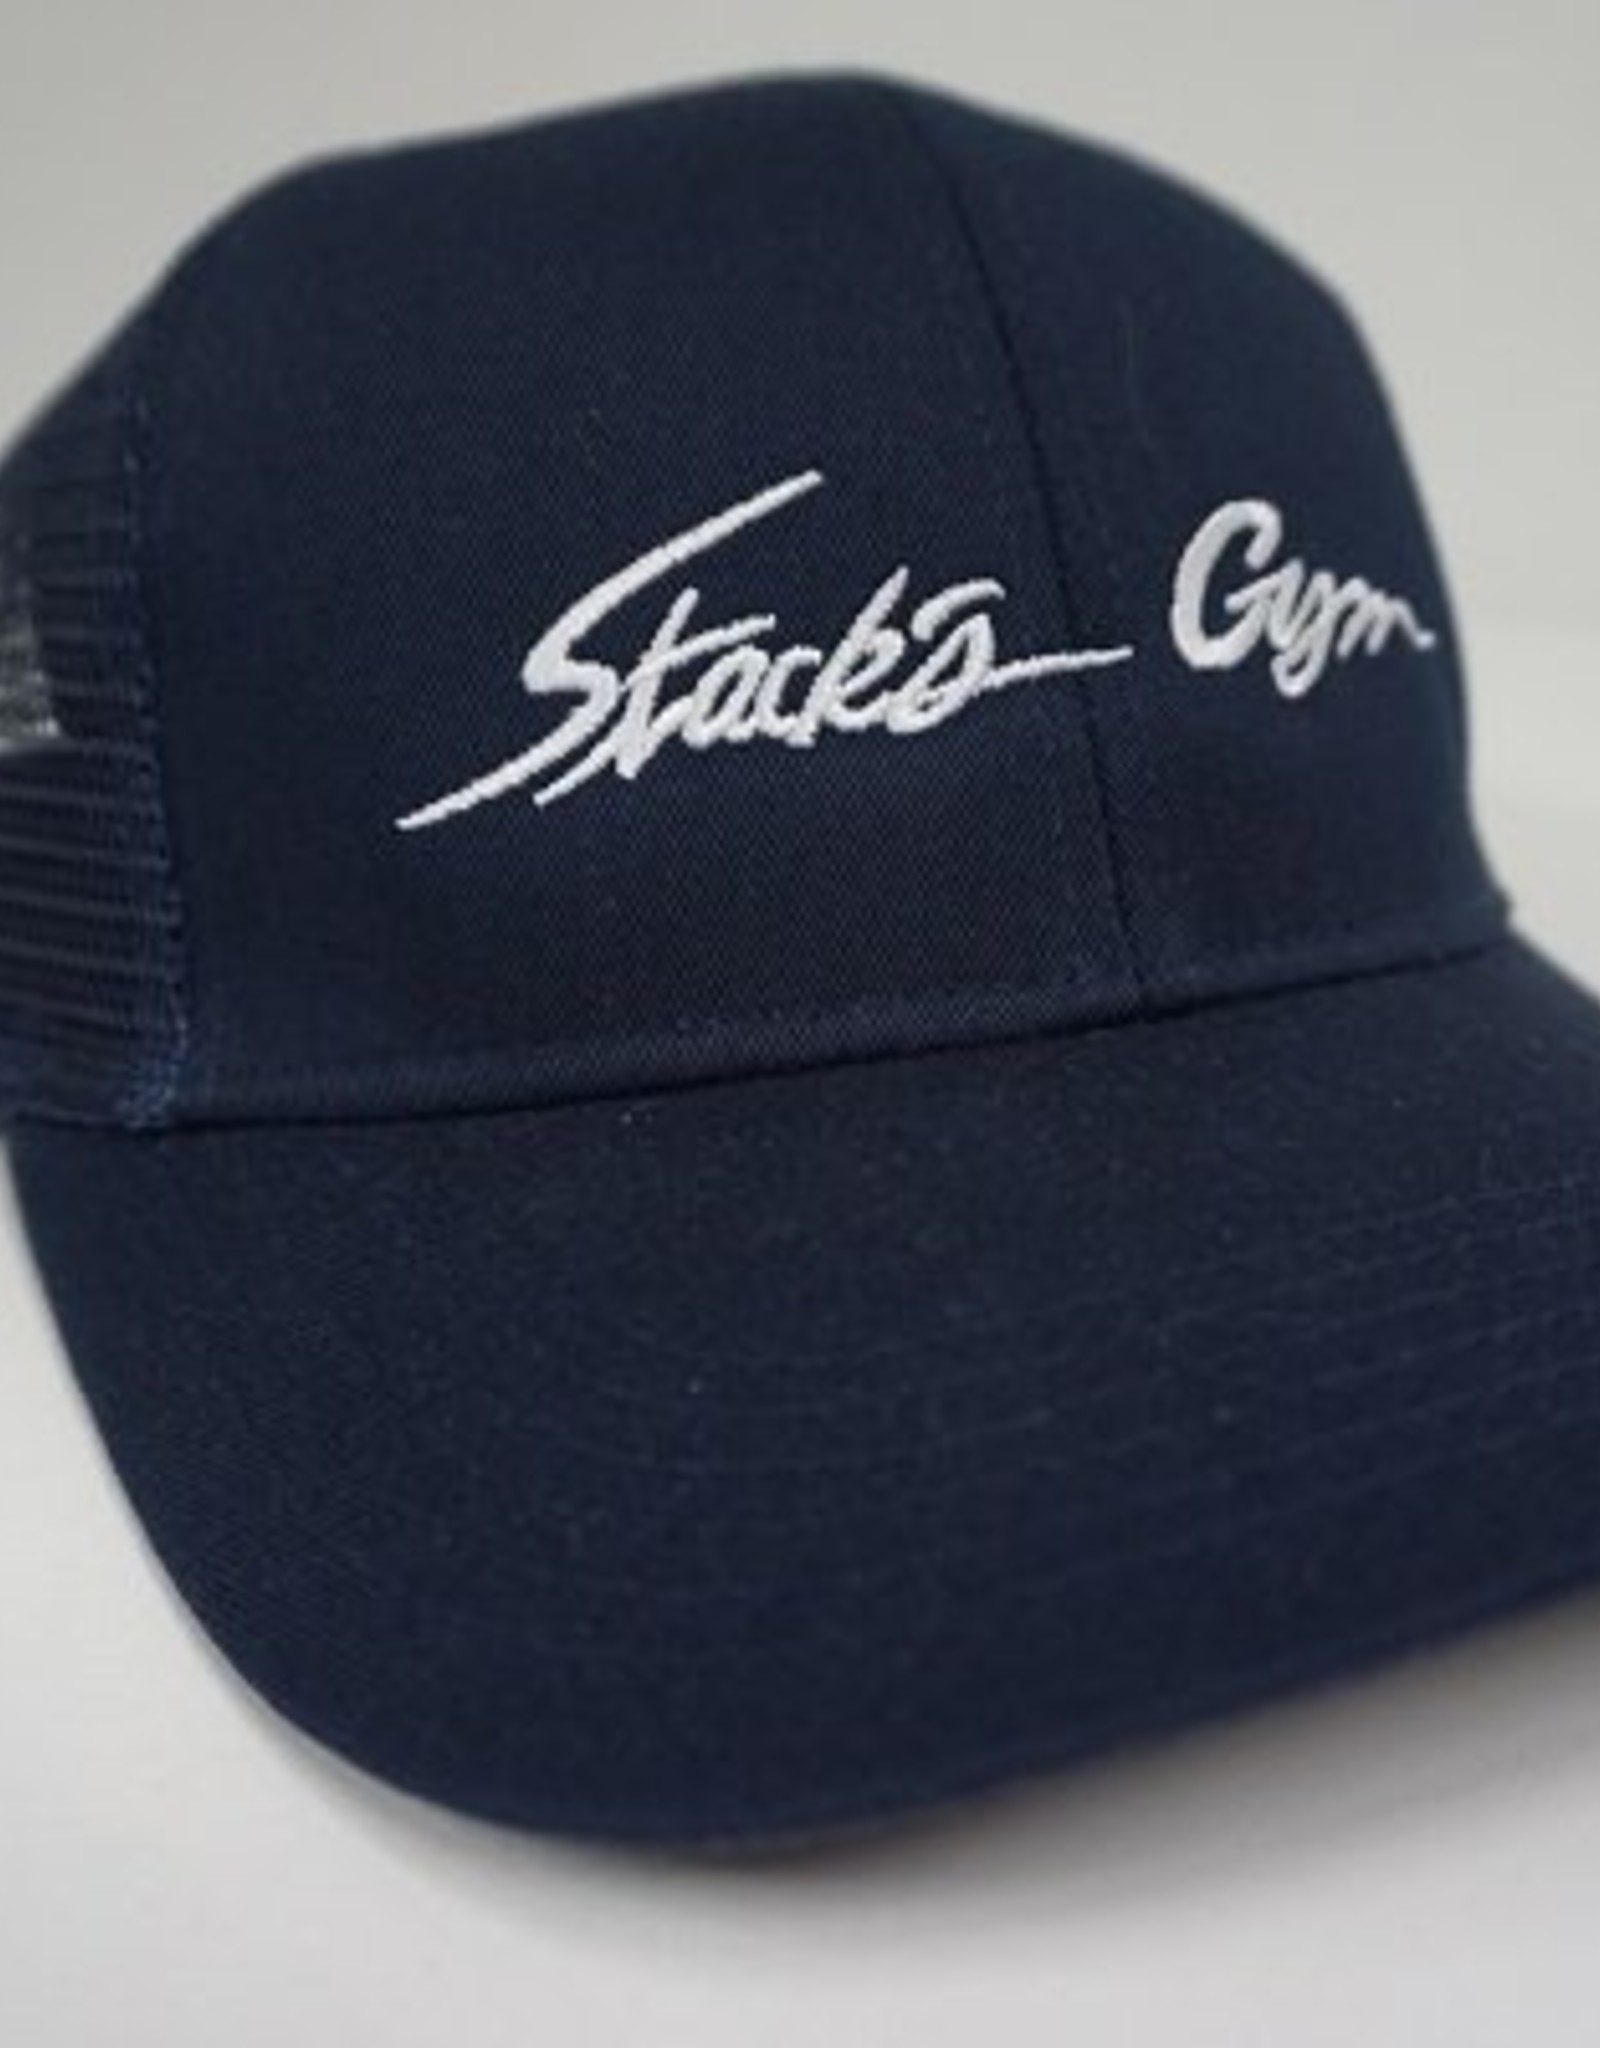 Stack's Gym Adjustable mesh back cap